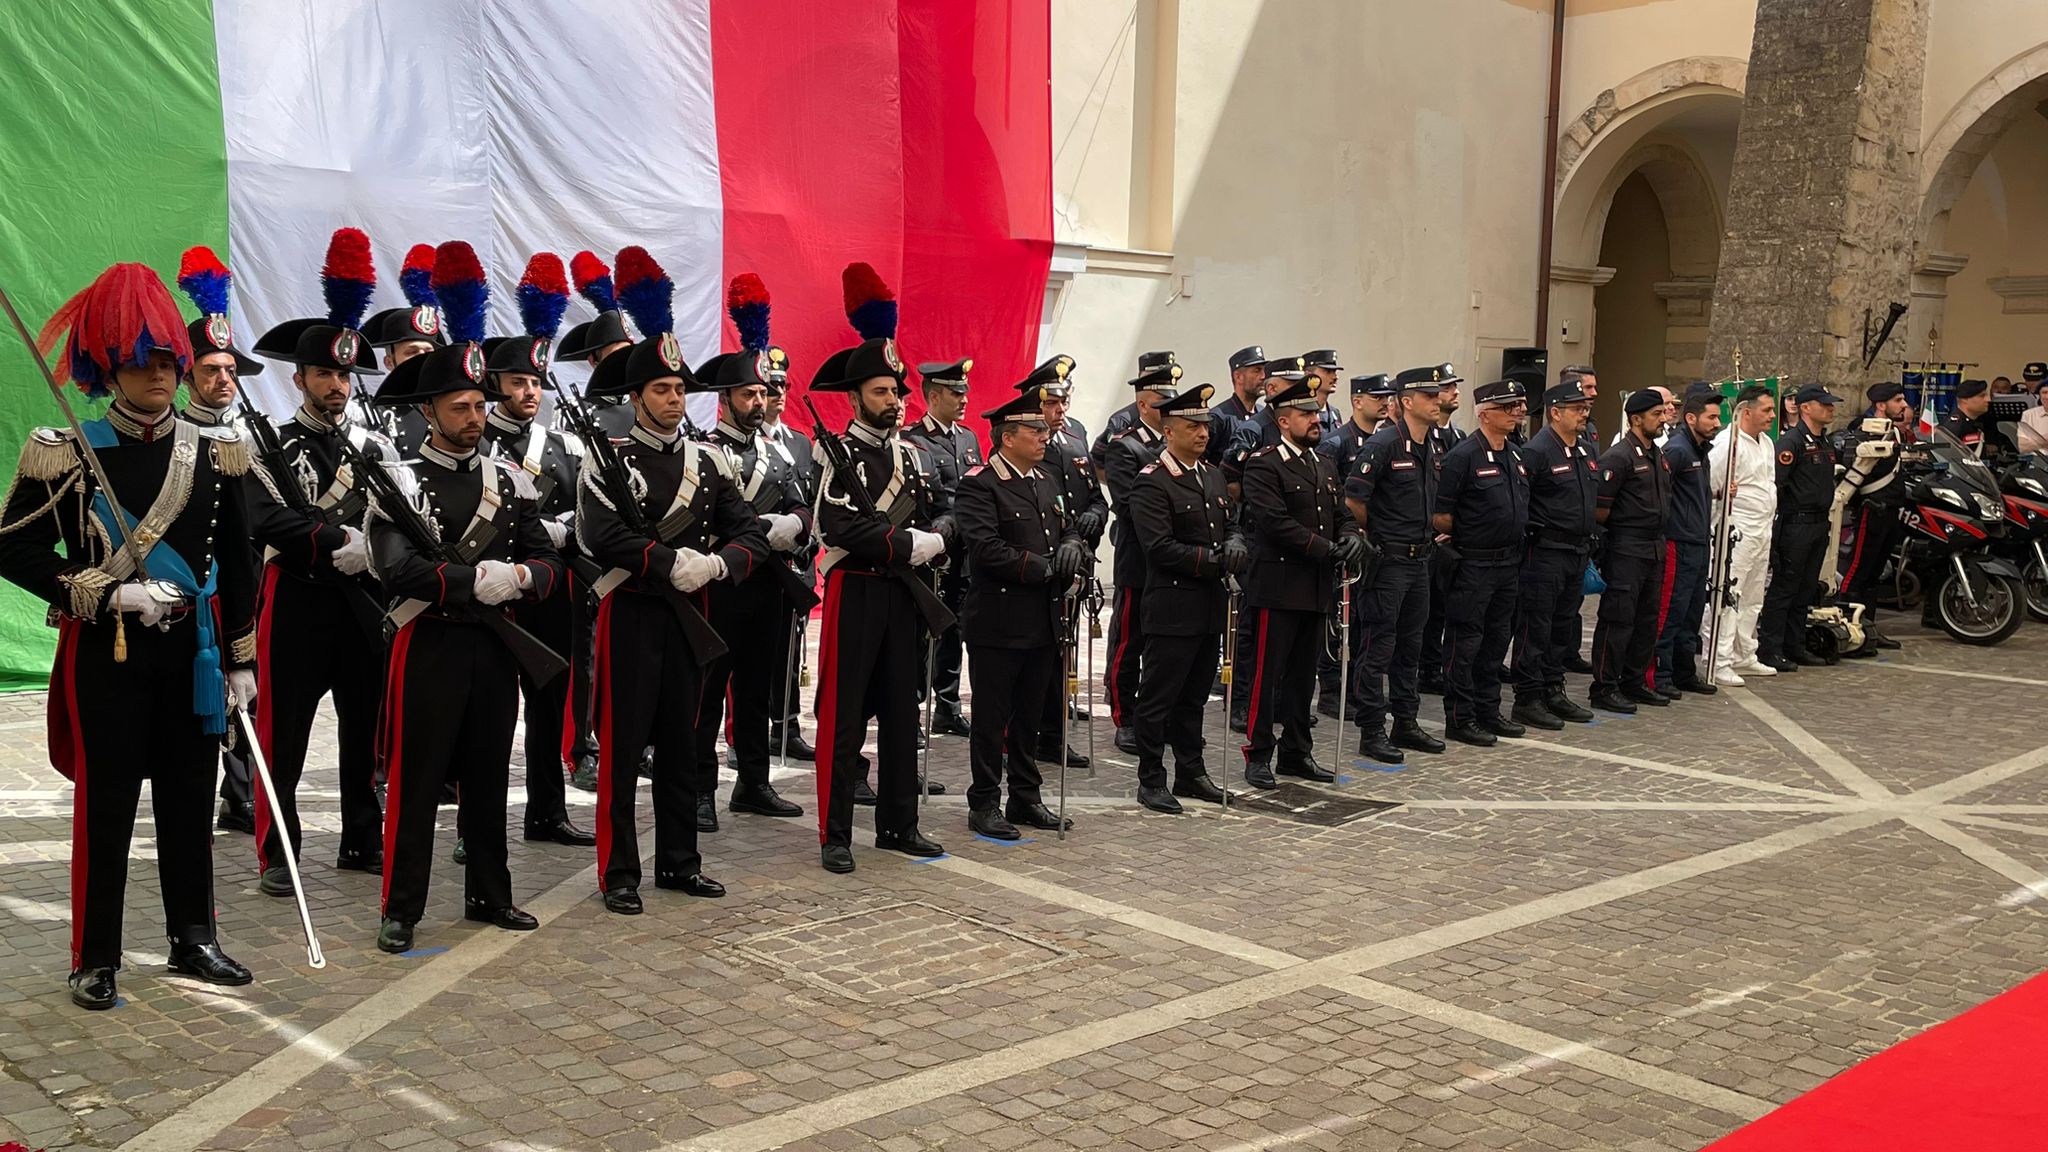 Cerimonia a Cosenza per i 209 anni dell'Arma dei Carabinieri - ABM Report